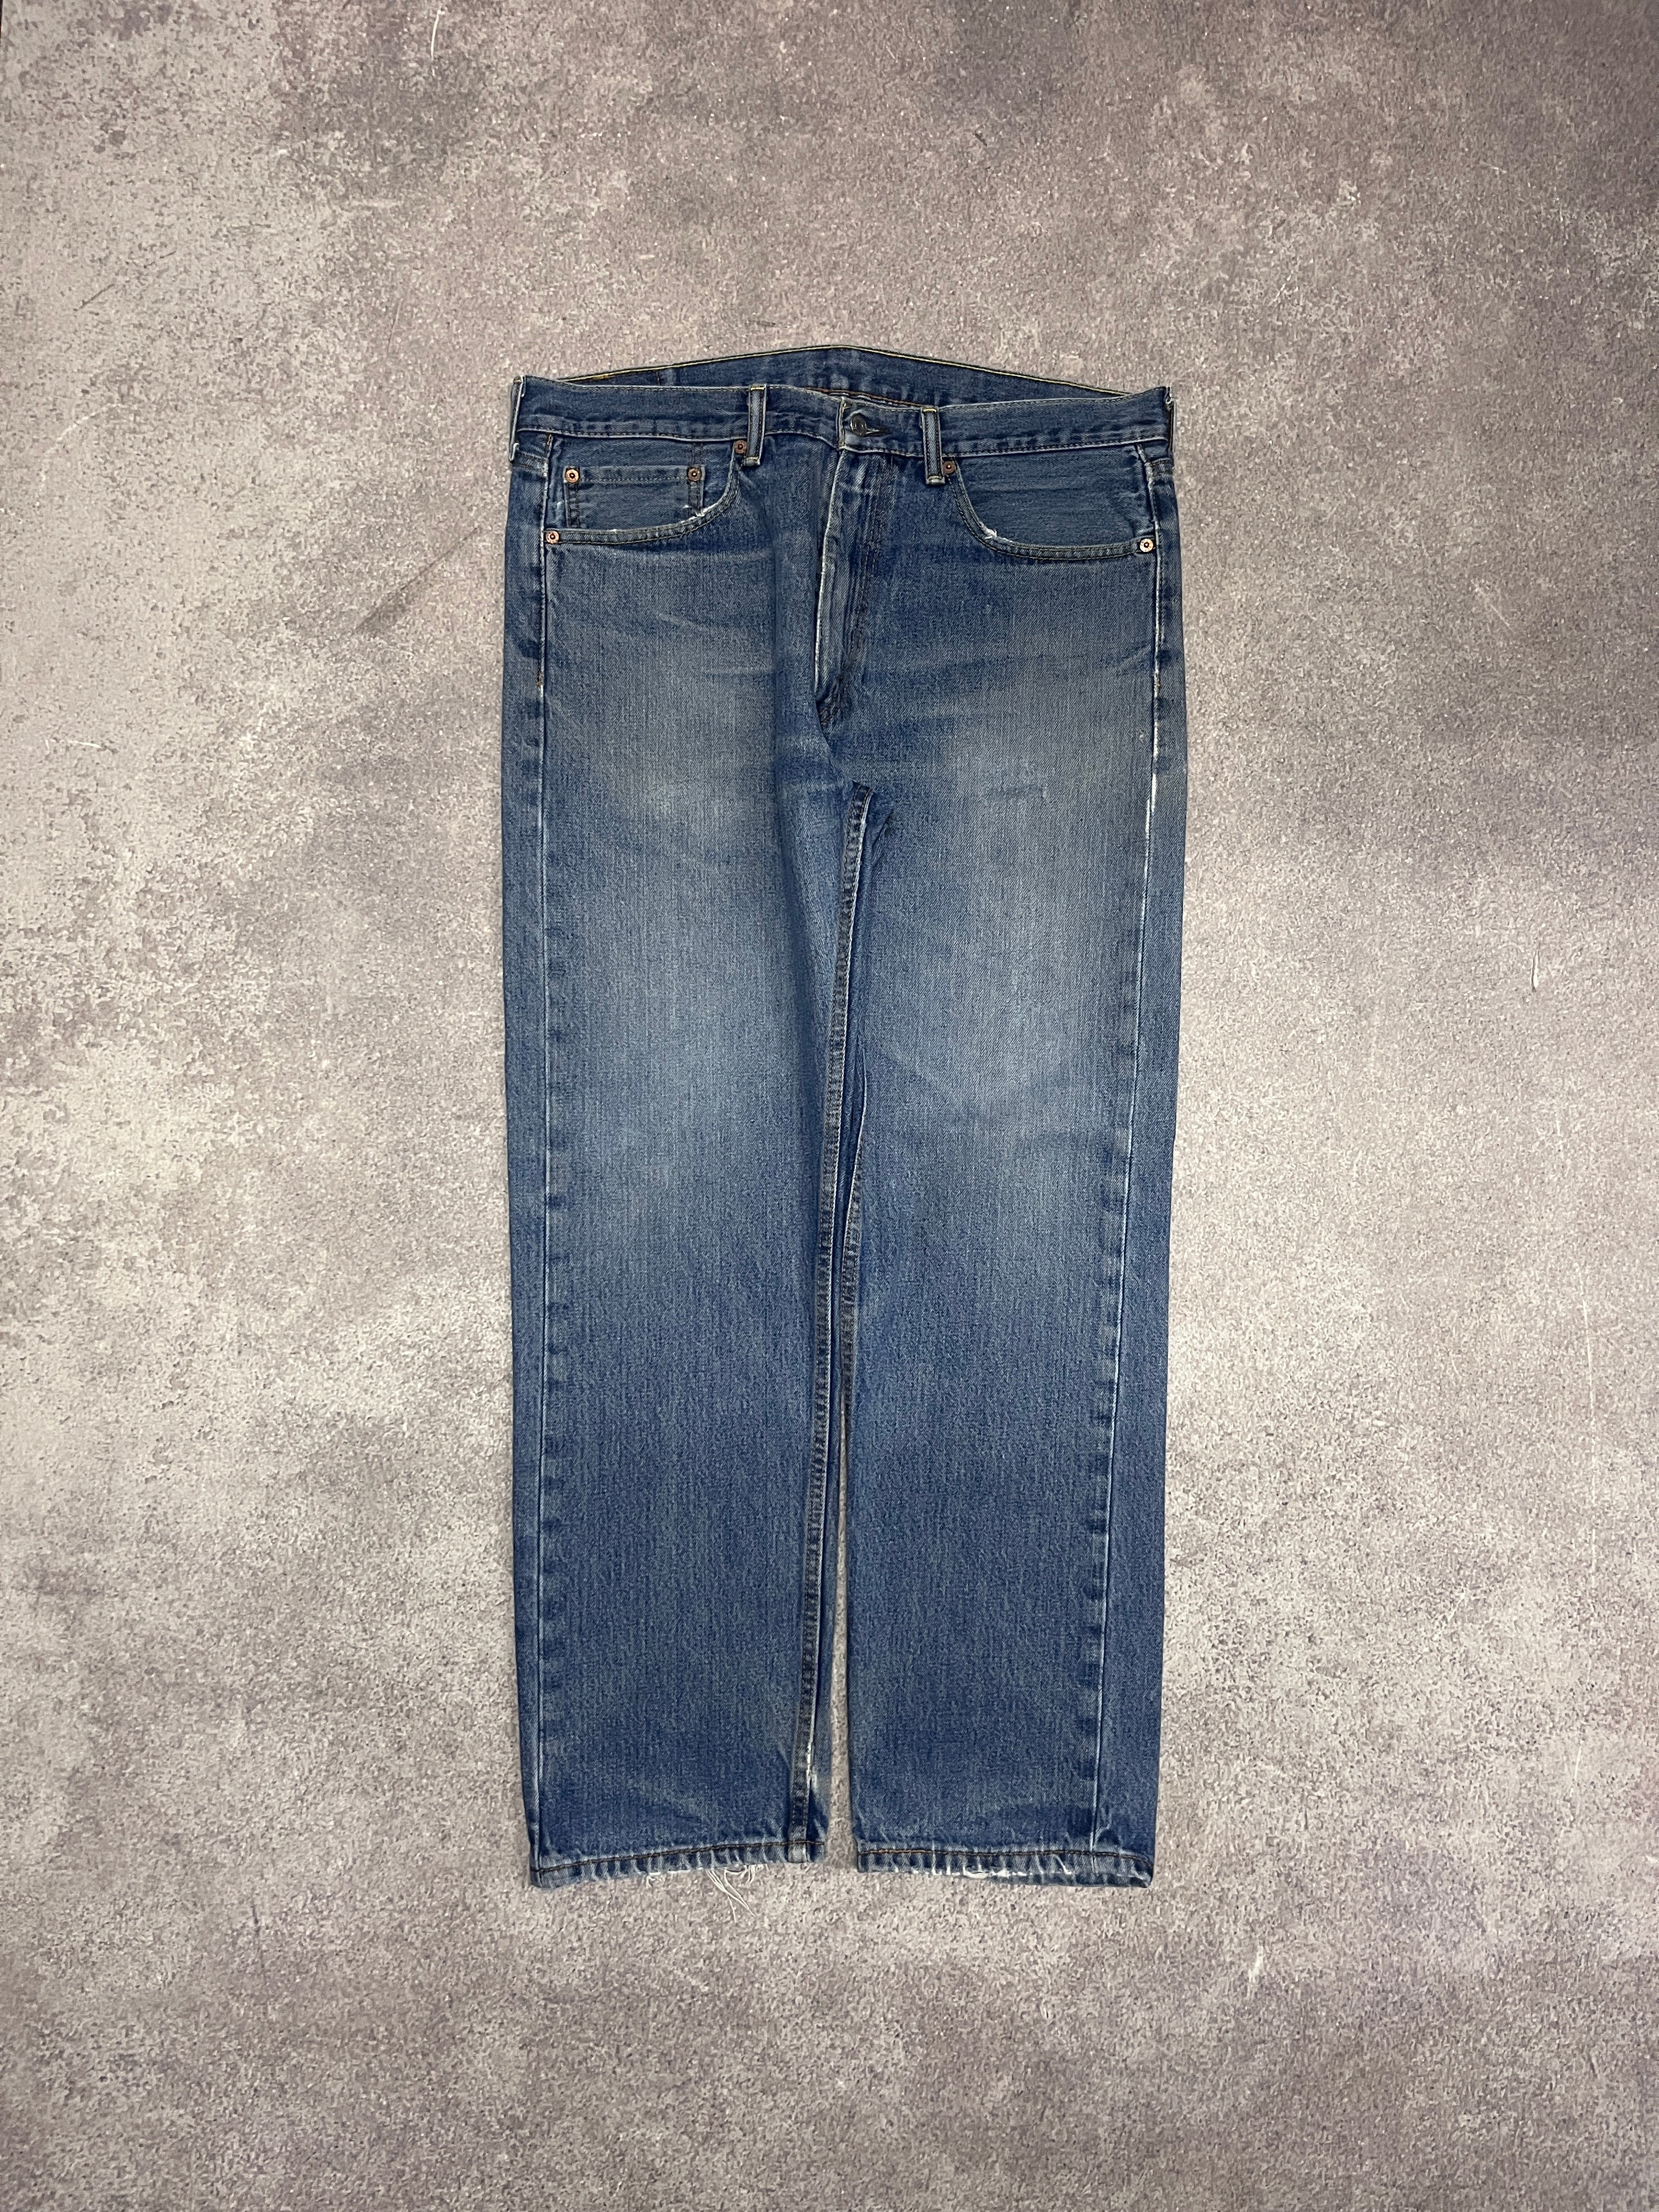 Vintage Levi 505 Denim Jeans Blue // W36 L29 - RHAGHOUSE VINTAGE